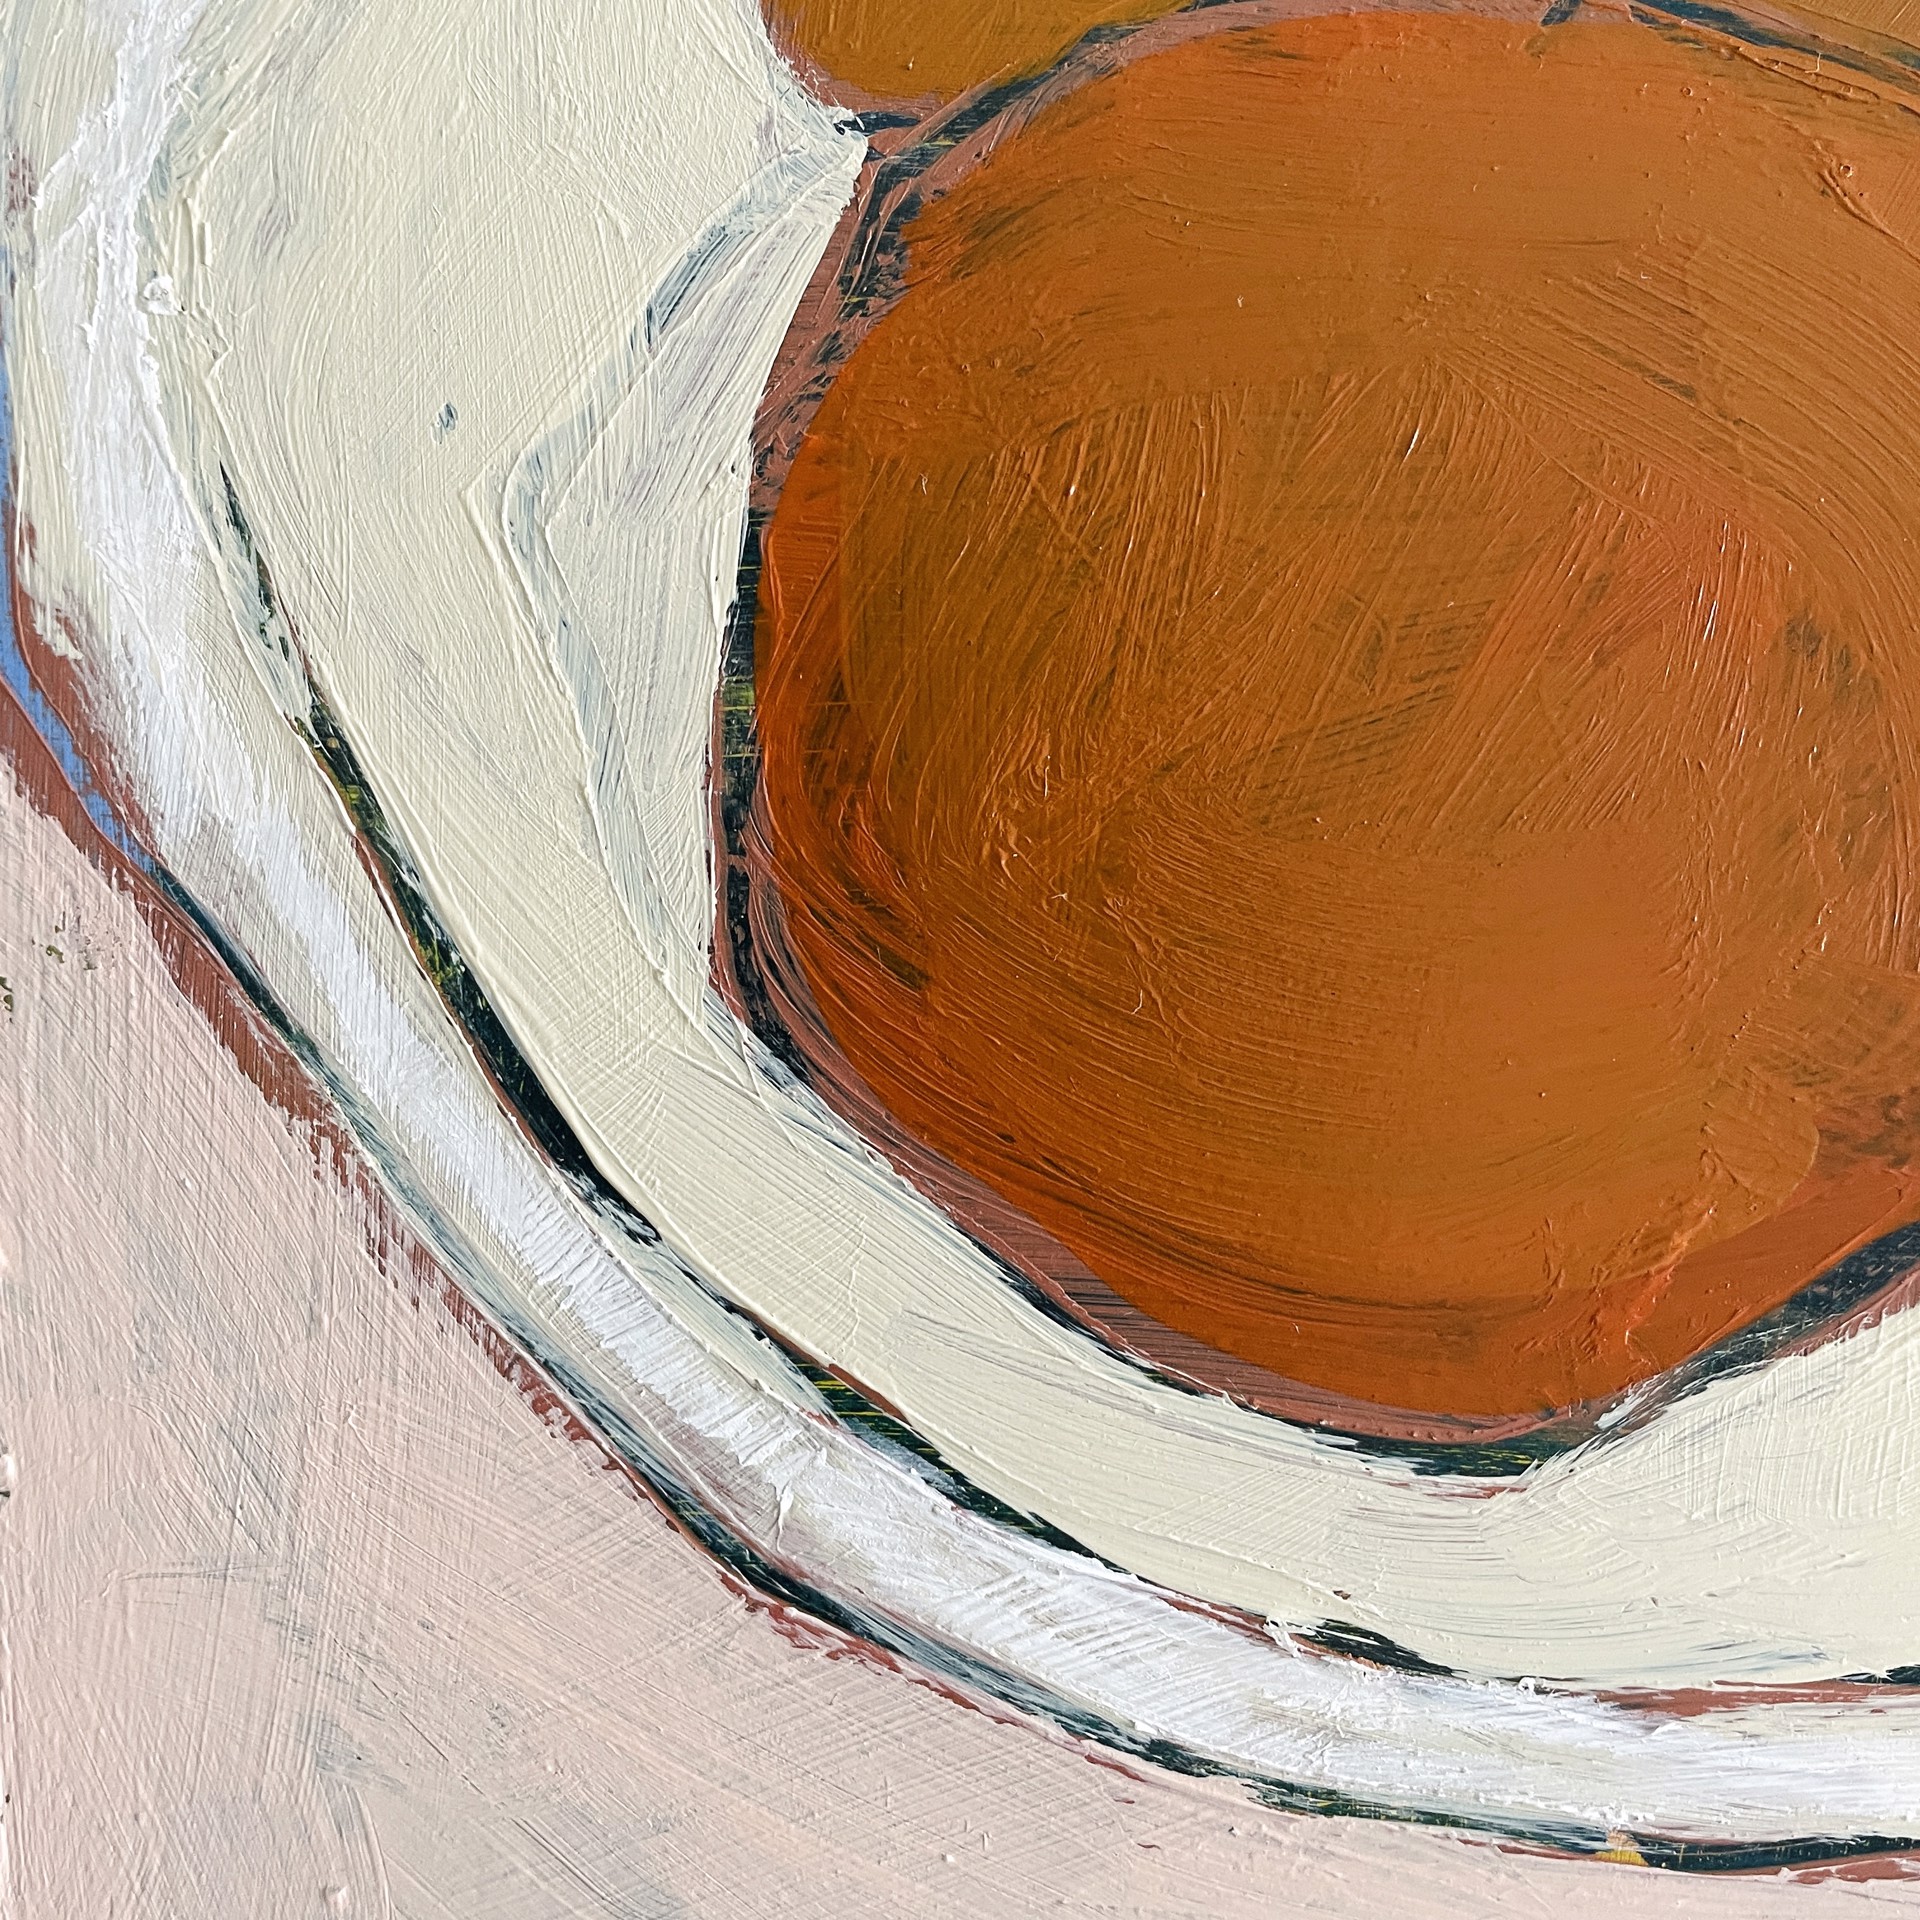 Five Oranges on White Plate by Rachael Van Dyke